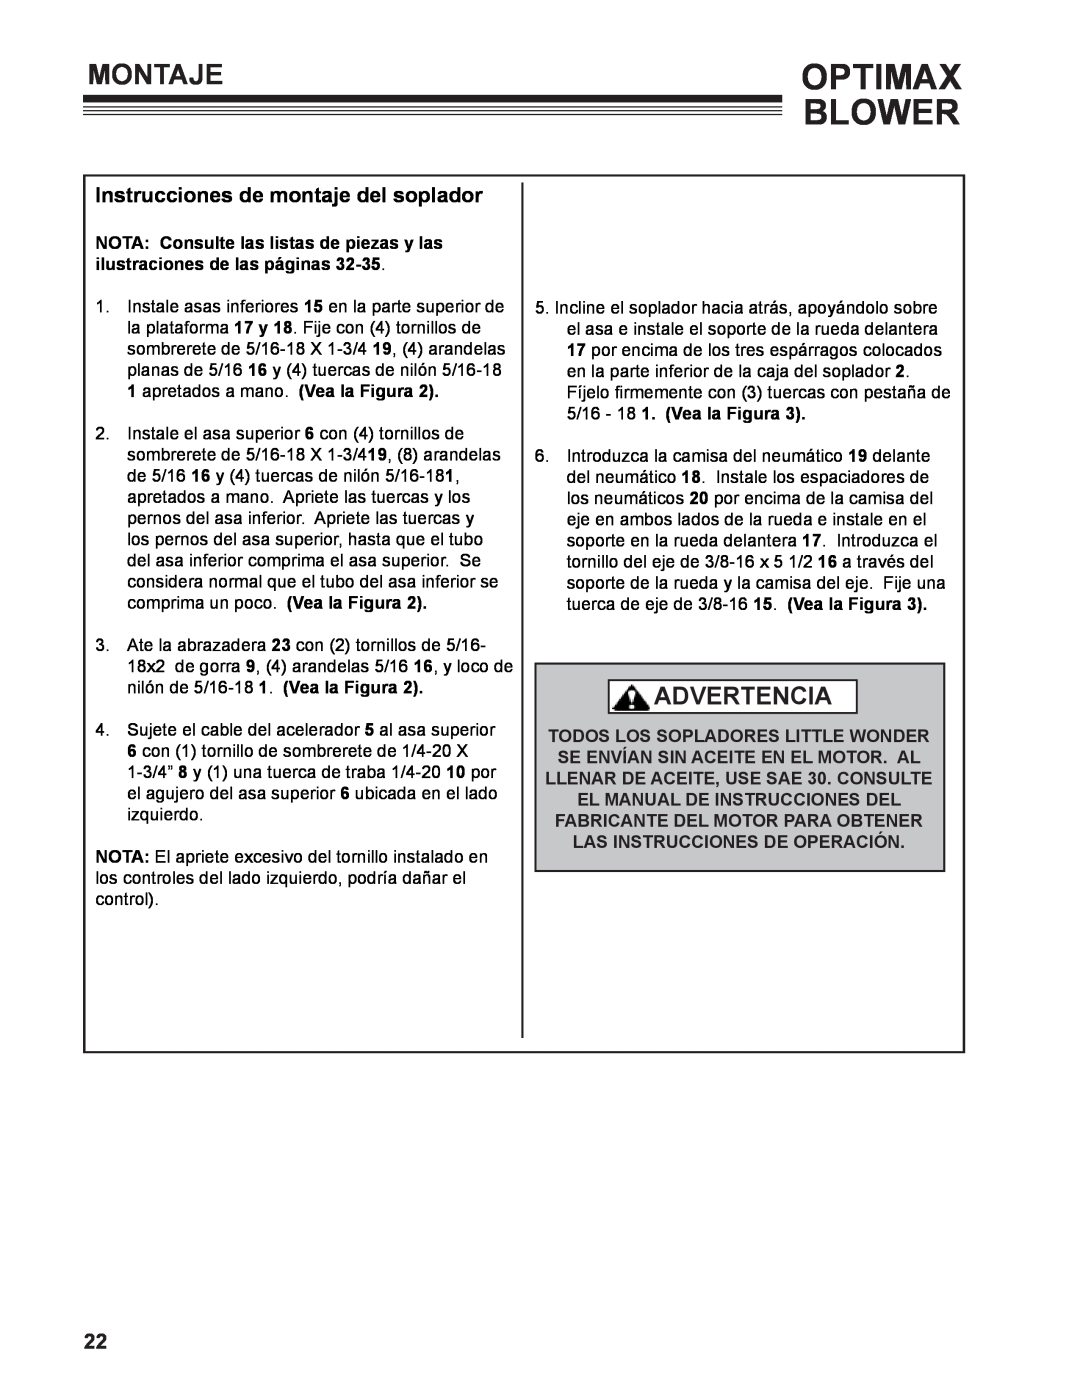 Little Wonder 9131-00-01 technical manual Montaje, Instrucciones de montaje del soplador, Optimax Blower, Advertencia 